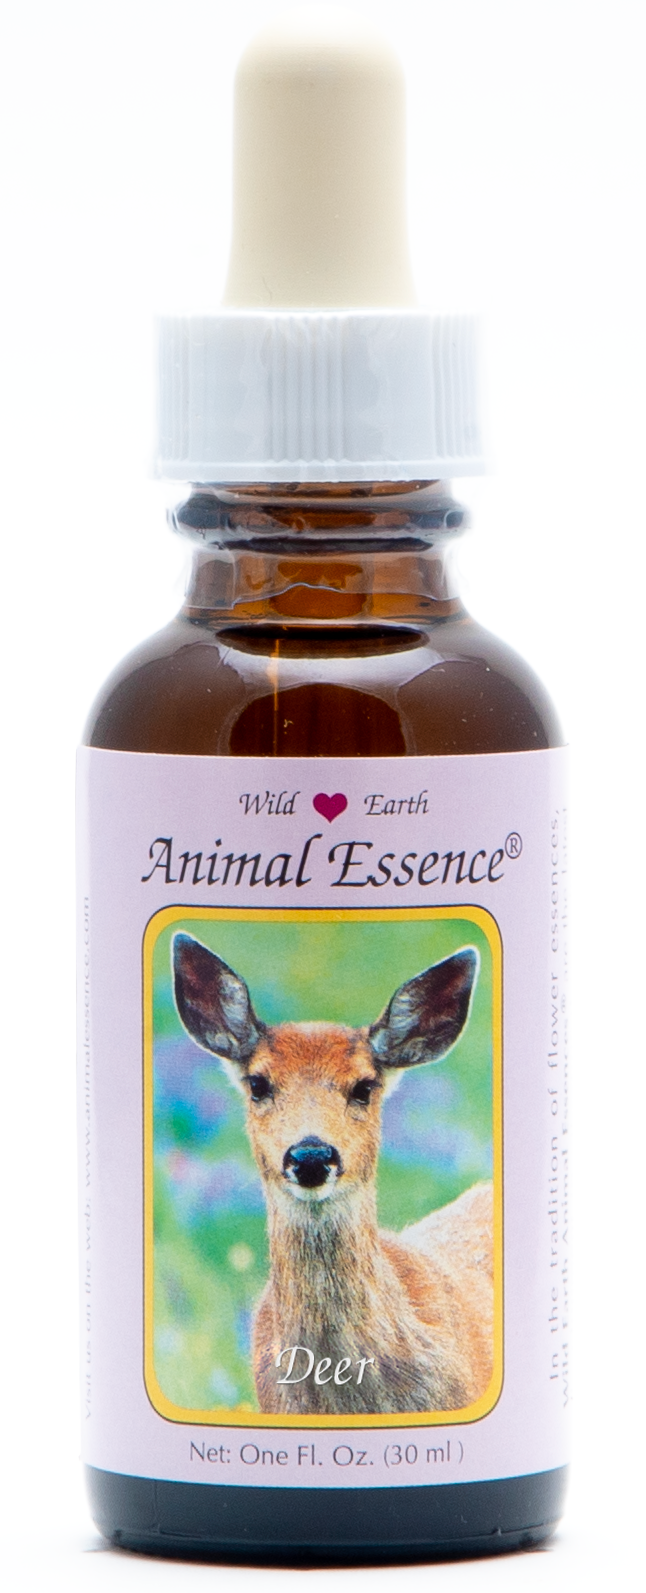 Deer animal essence 30ml